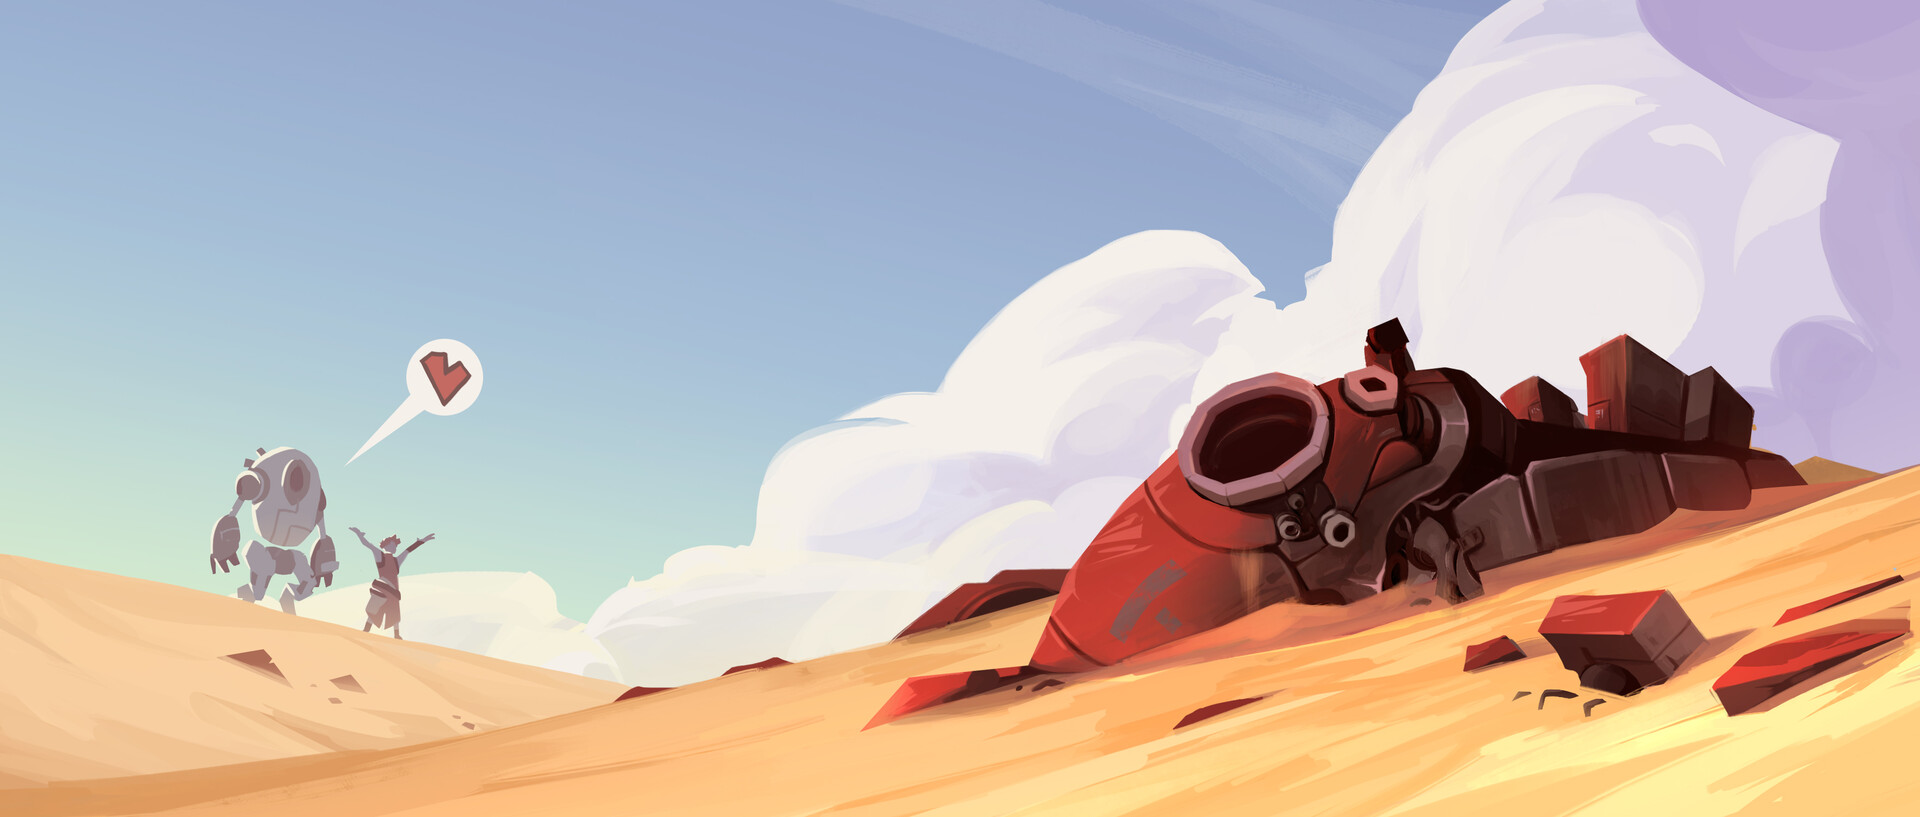 ArtStation - Sand Dune Mech Illustration